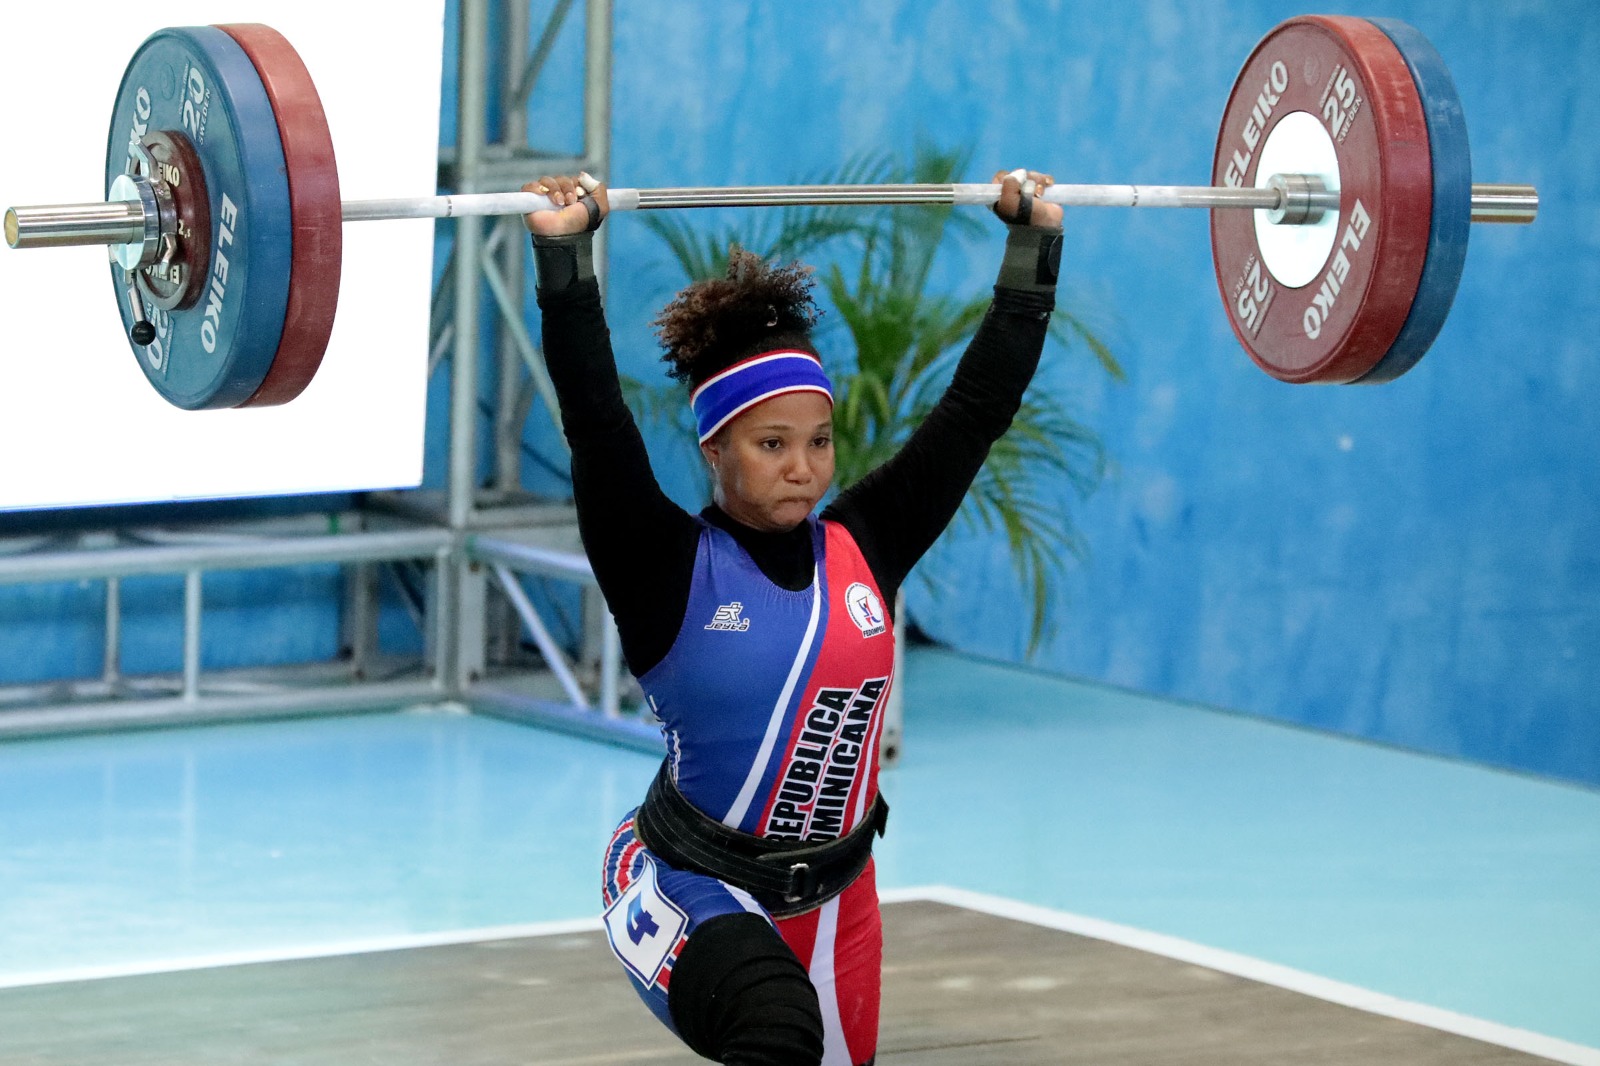 En este momento estás viendo La Dominicana Nathalia Novas quedó fuera del pódium en la prueba de 59 kilos femeninos. Novas tuvo 89 kilos en arranque y 109 en el envión, para un total de 198 kilos.